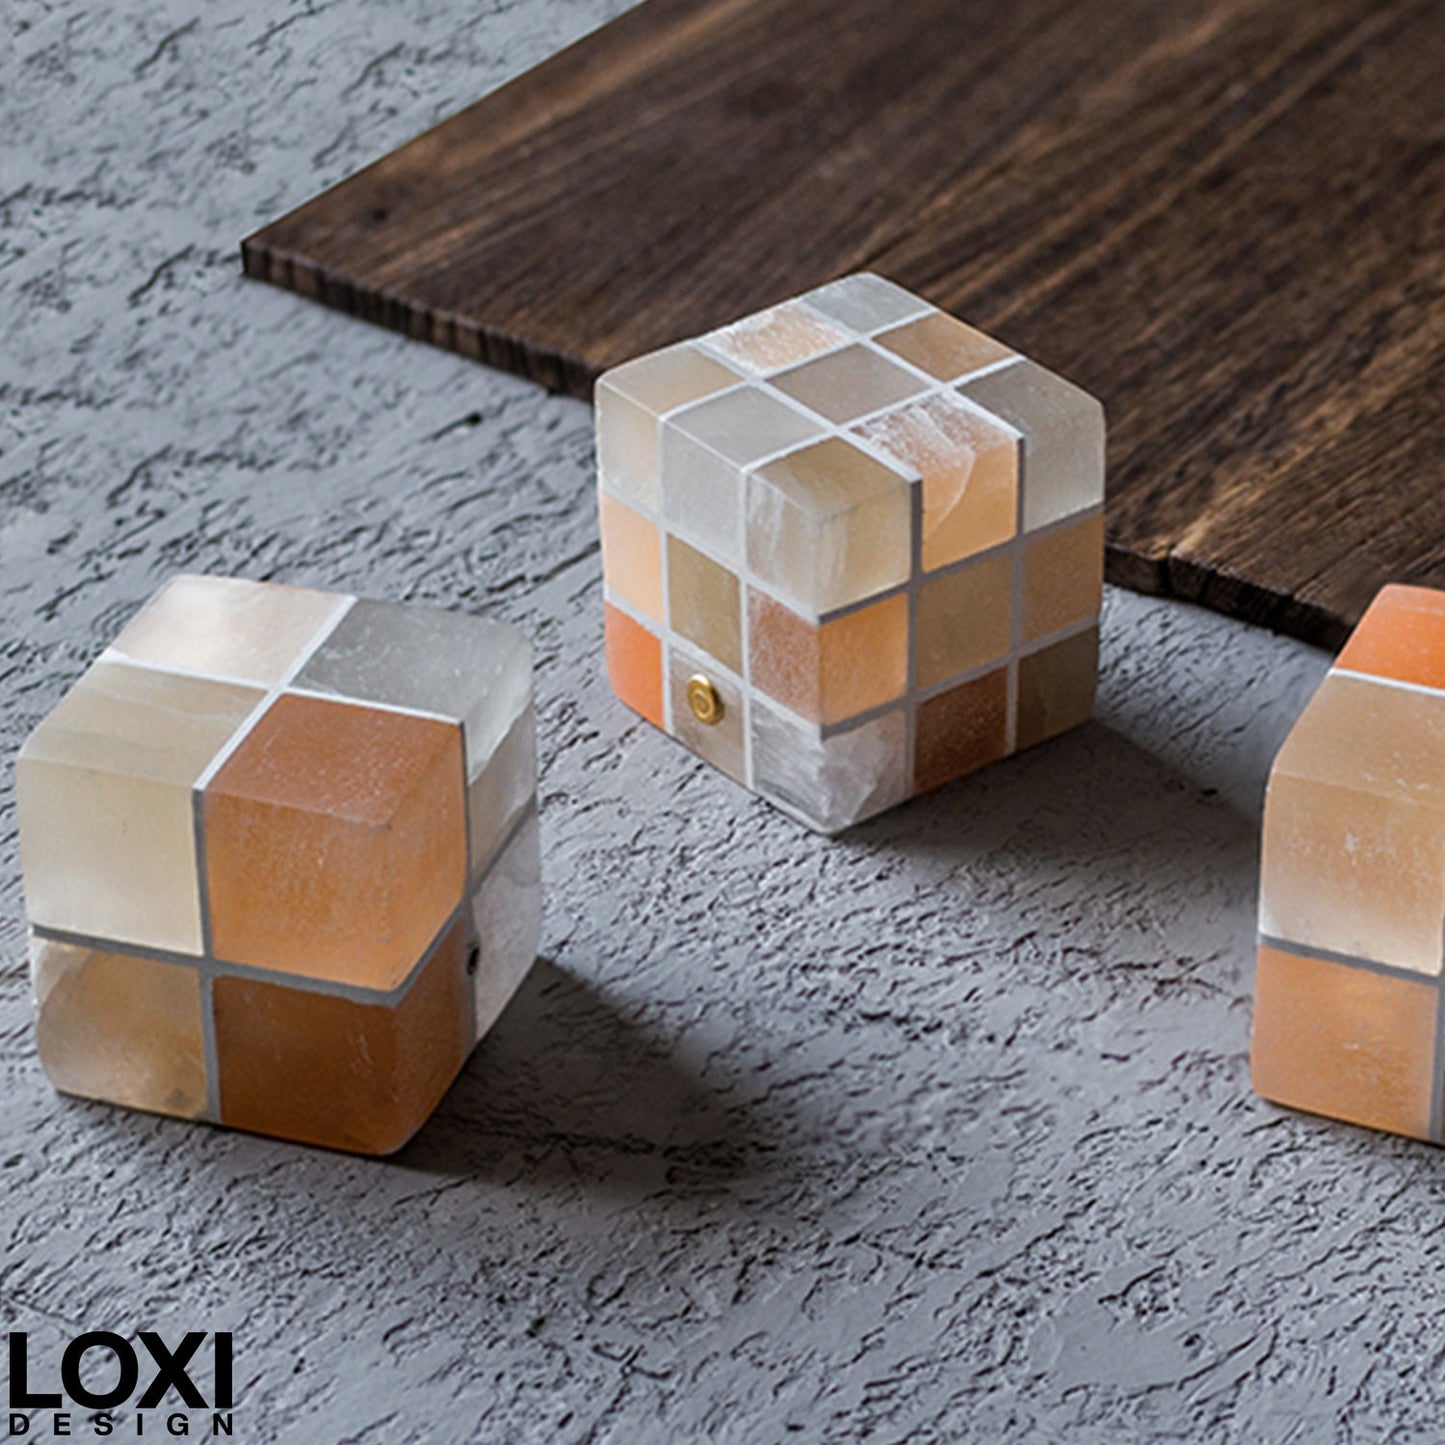 LoxiDesign™ Rubik's Cube Light